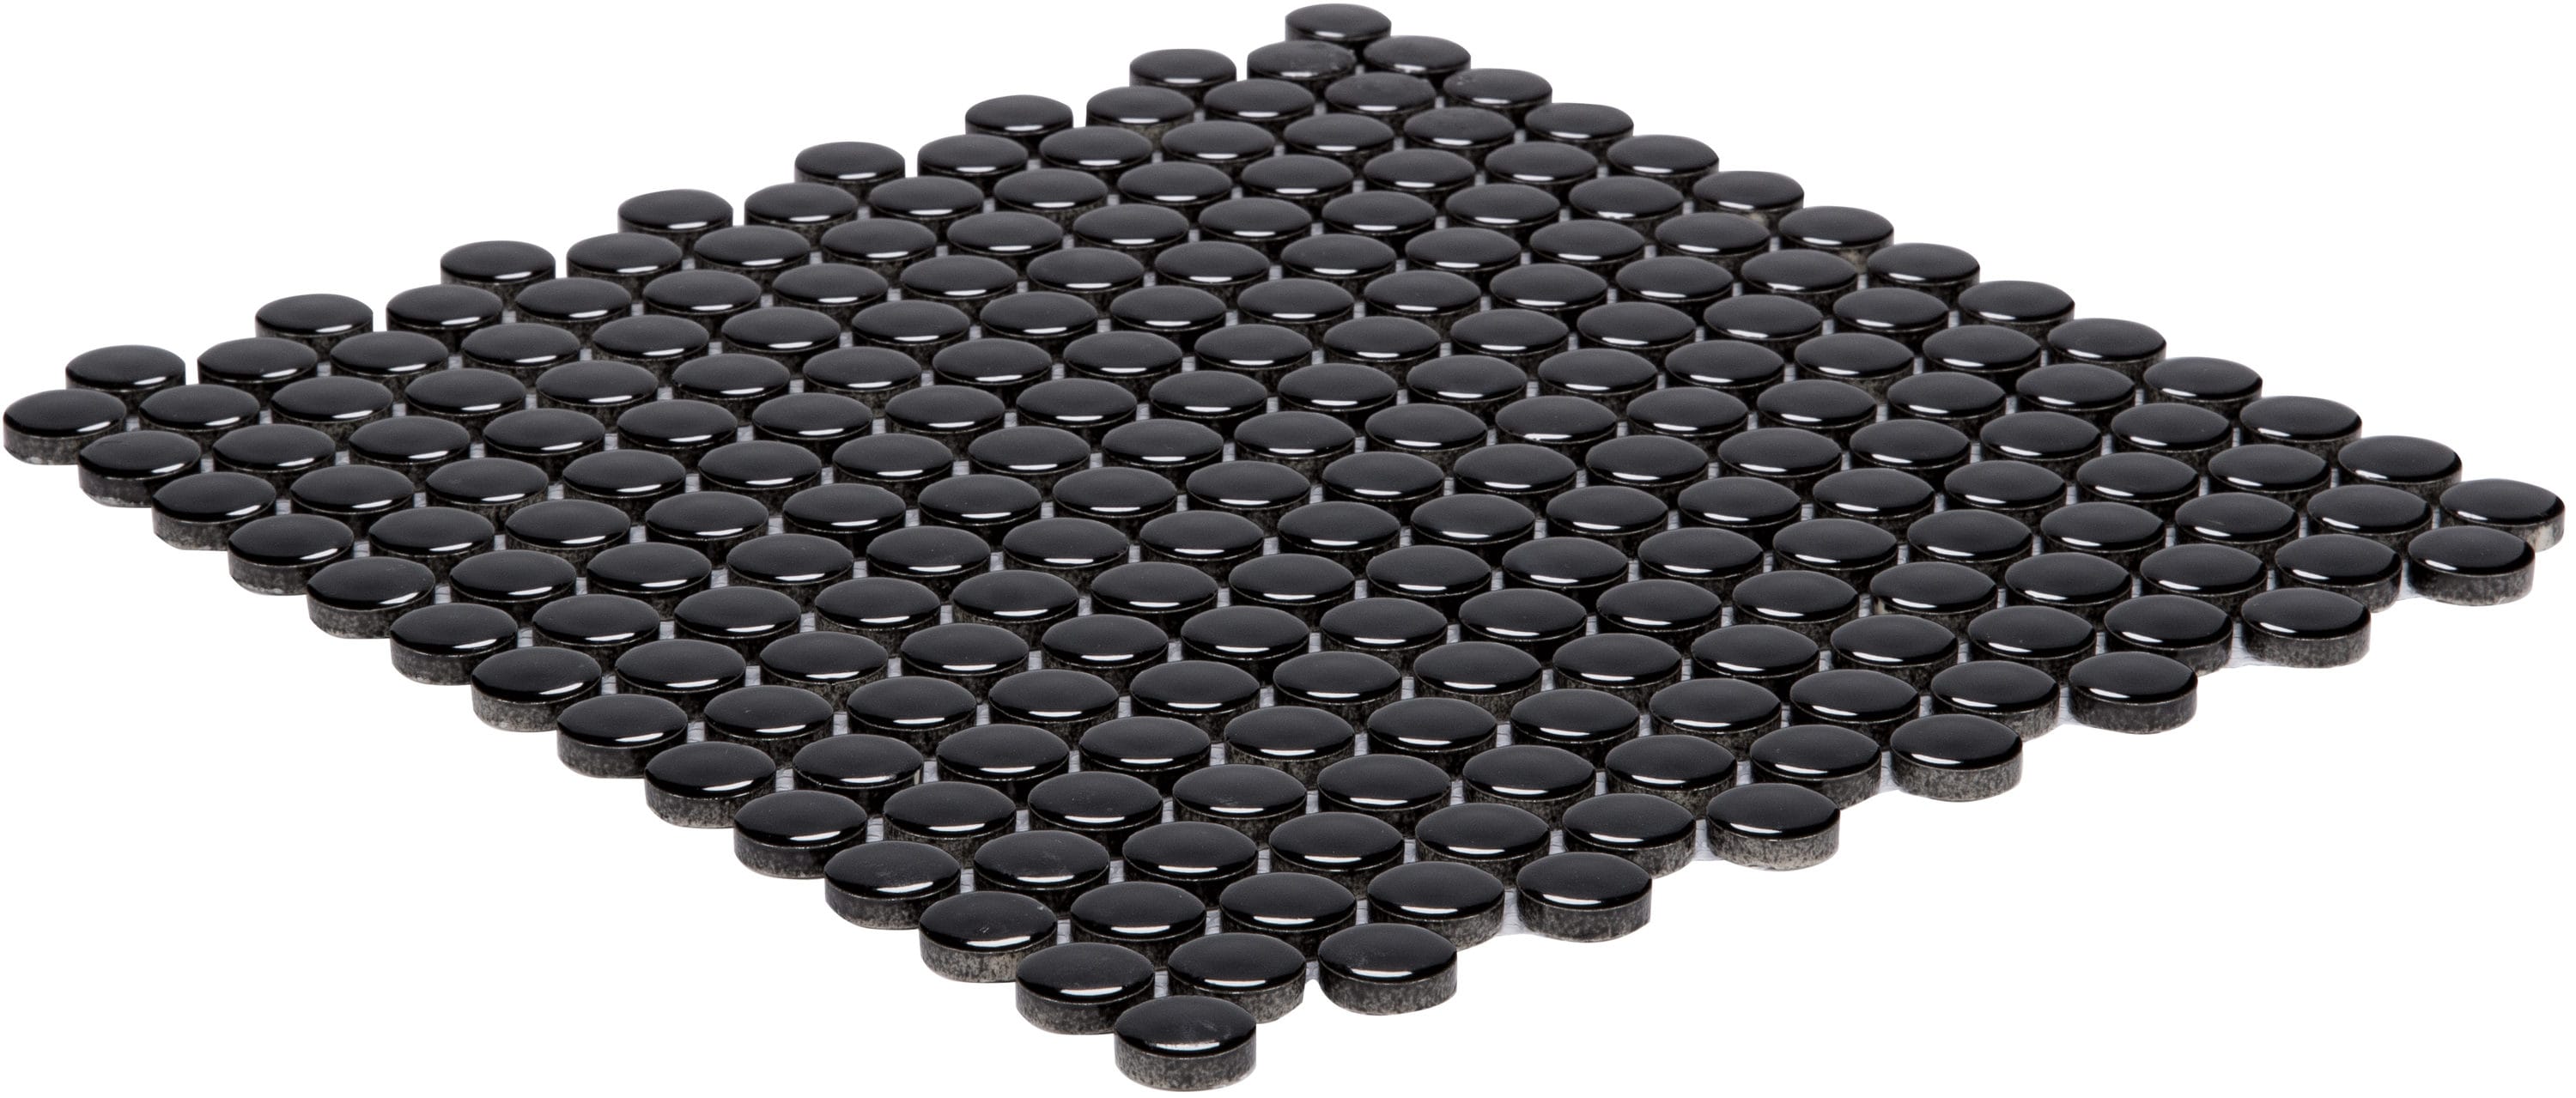 230ct Black Assorted Round Plastic Rhinestones by hildie & jo